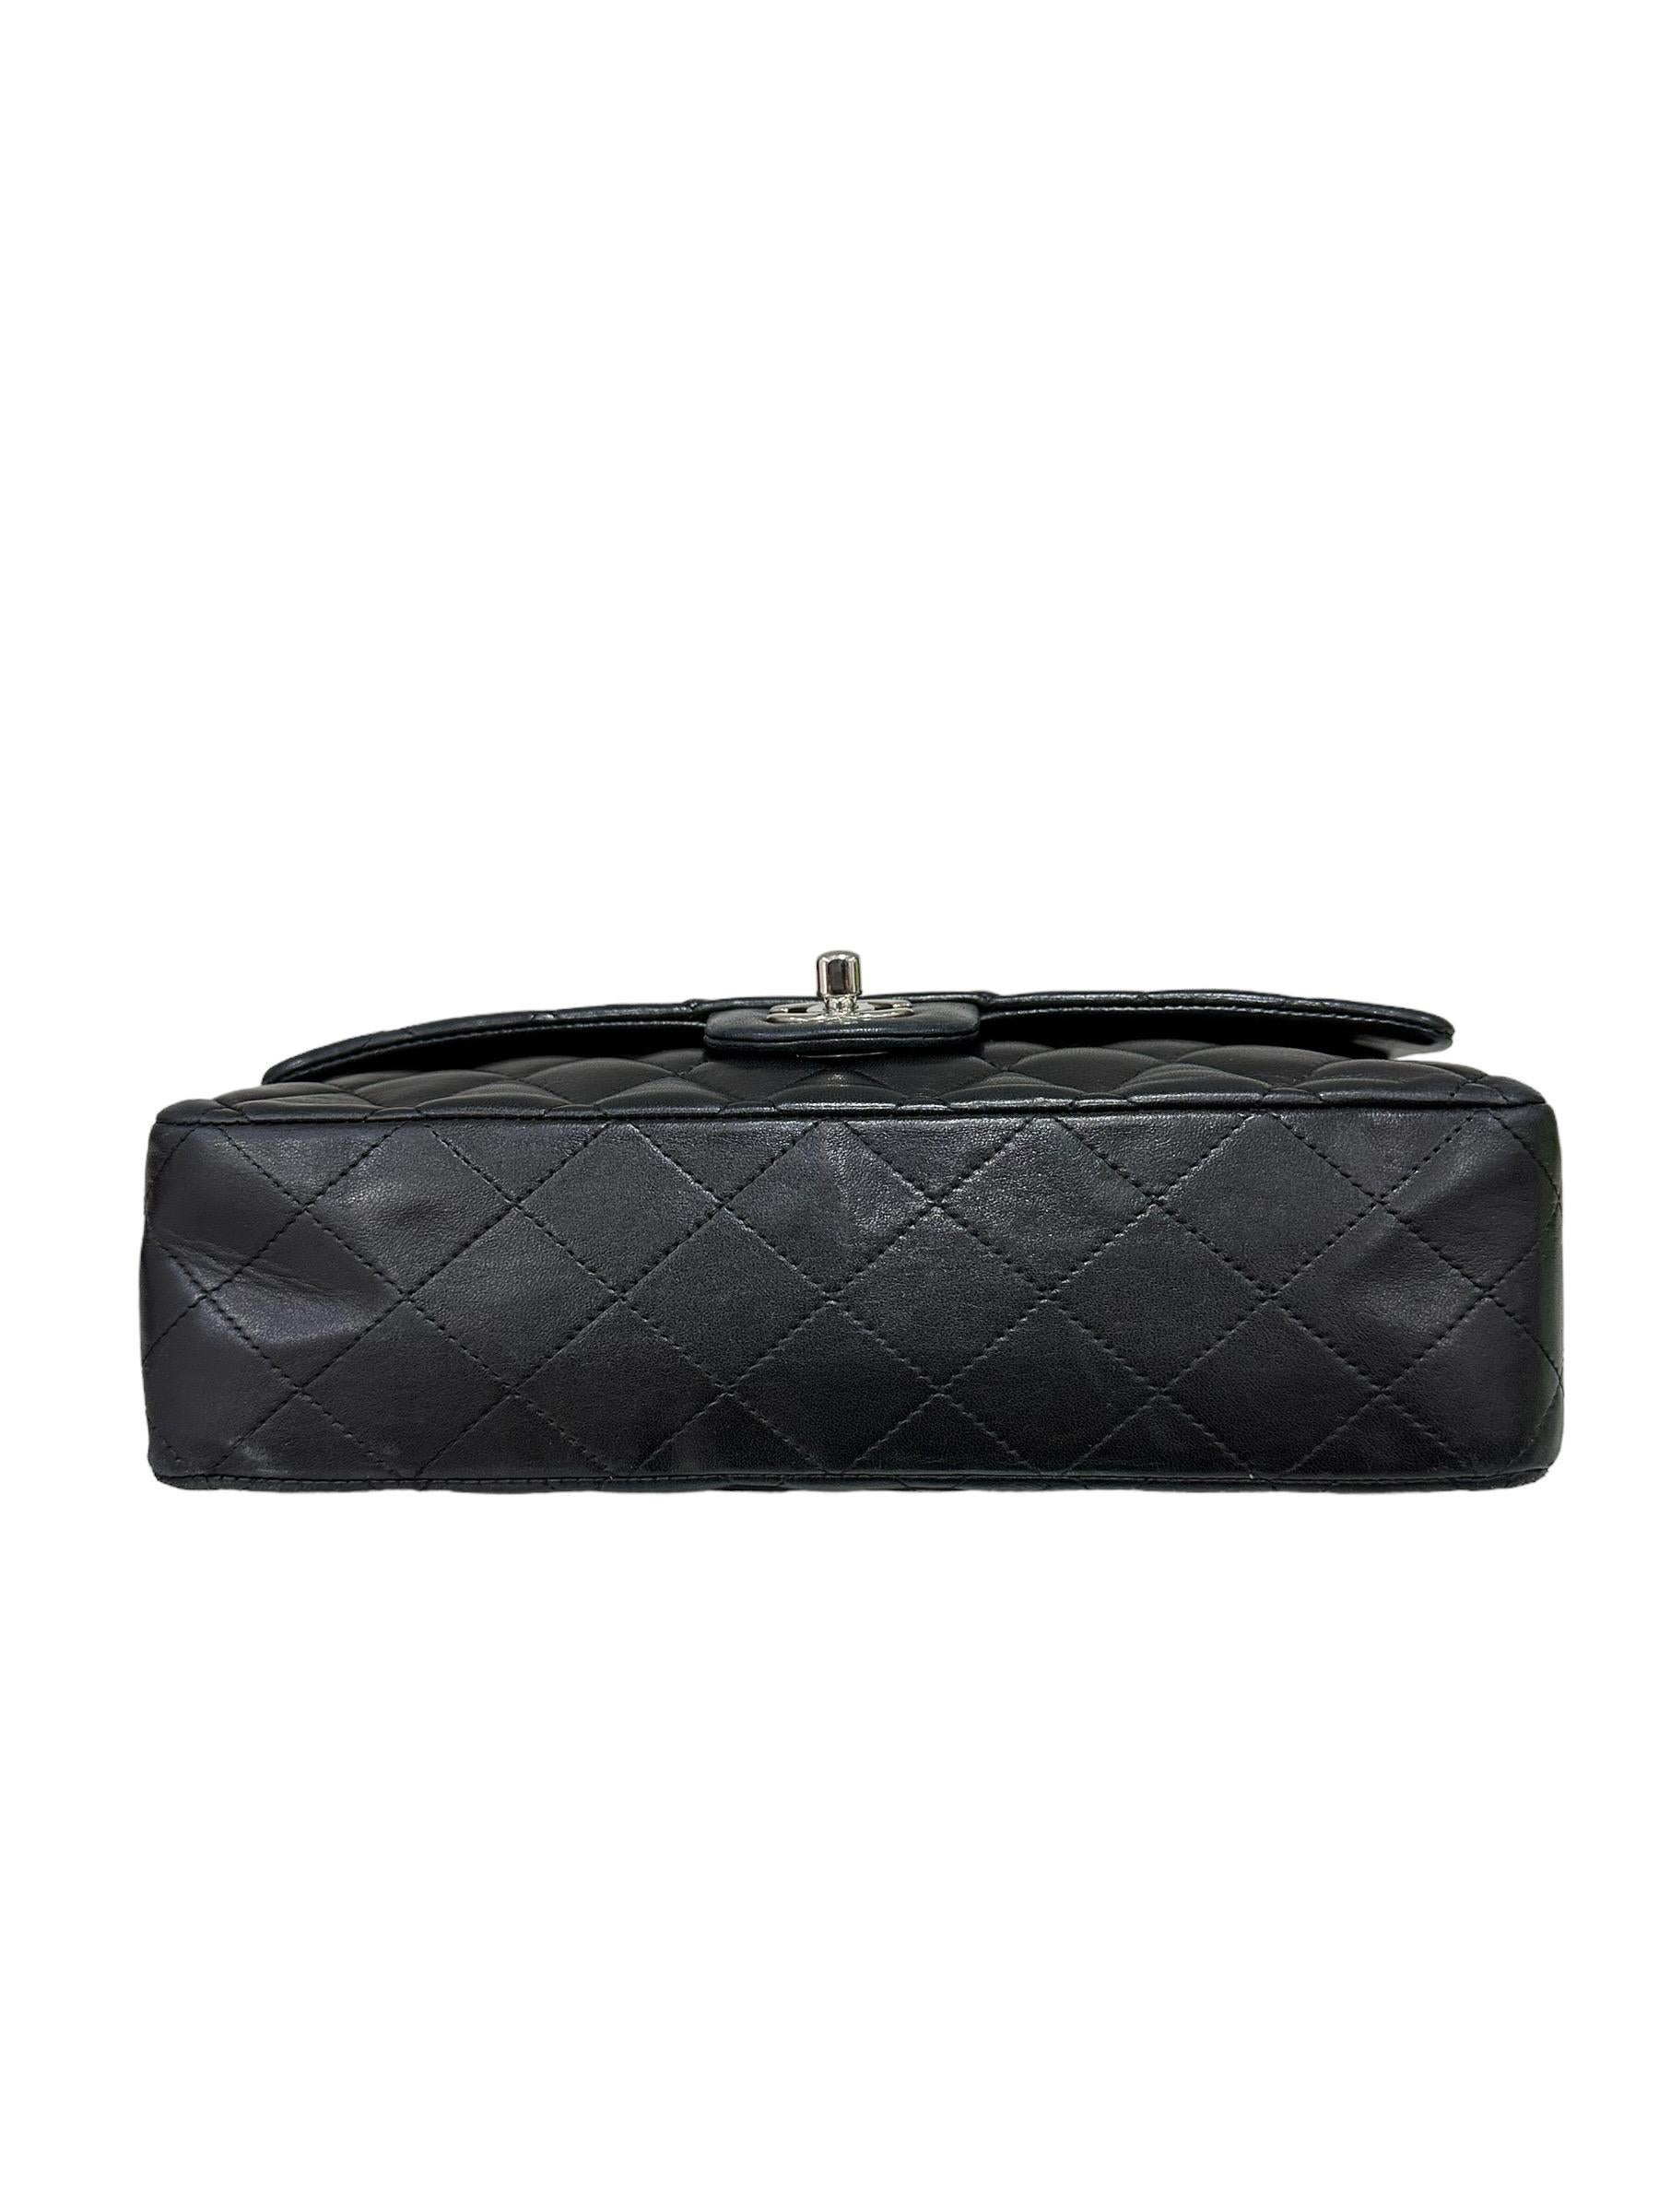 2008 Chanel. 2.55 Timeless Black Leather Shoulder Bag 7